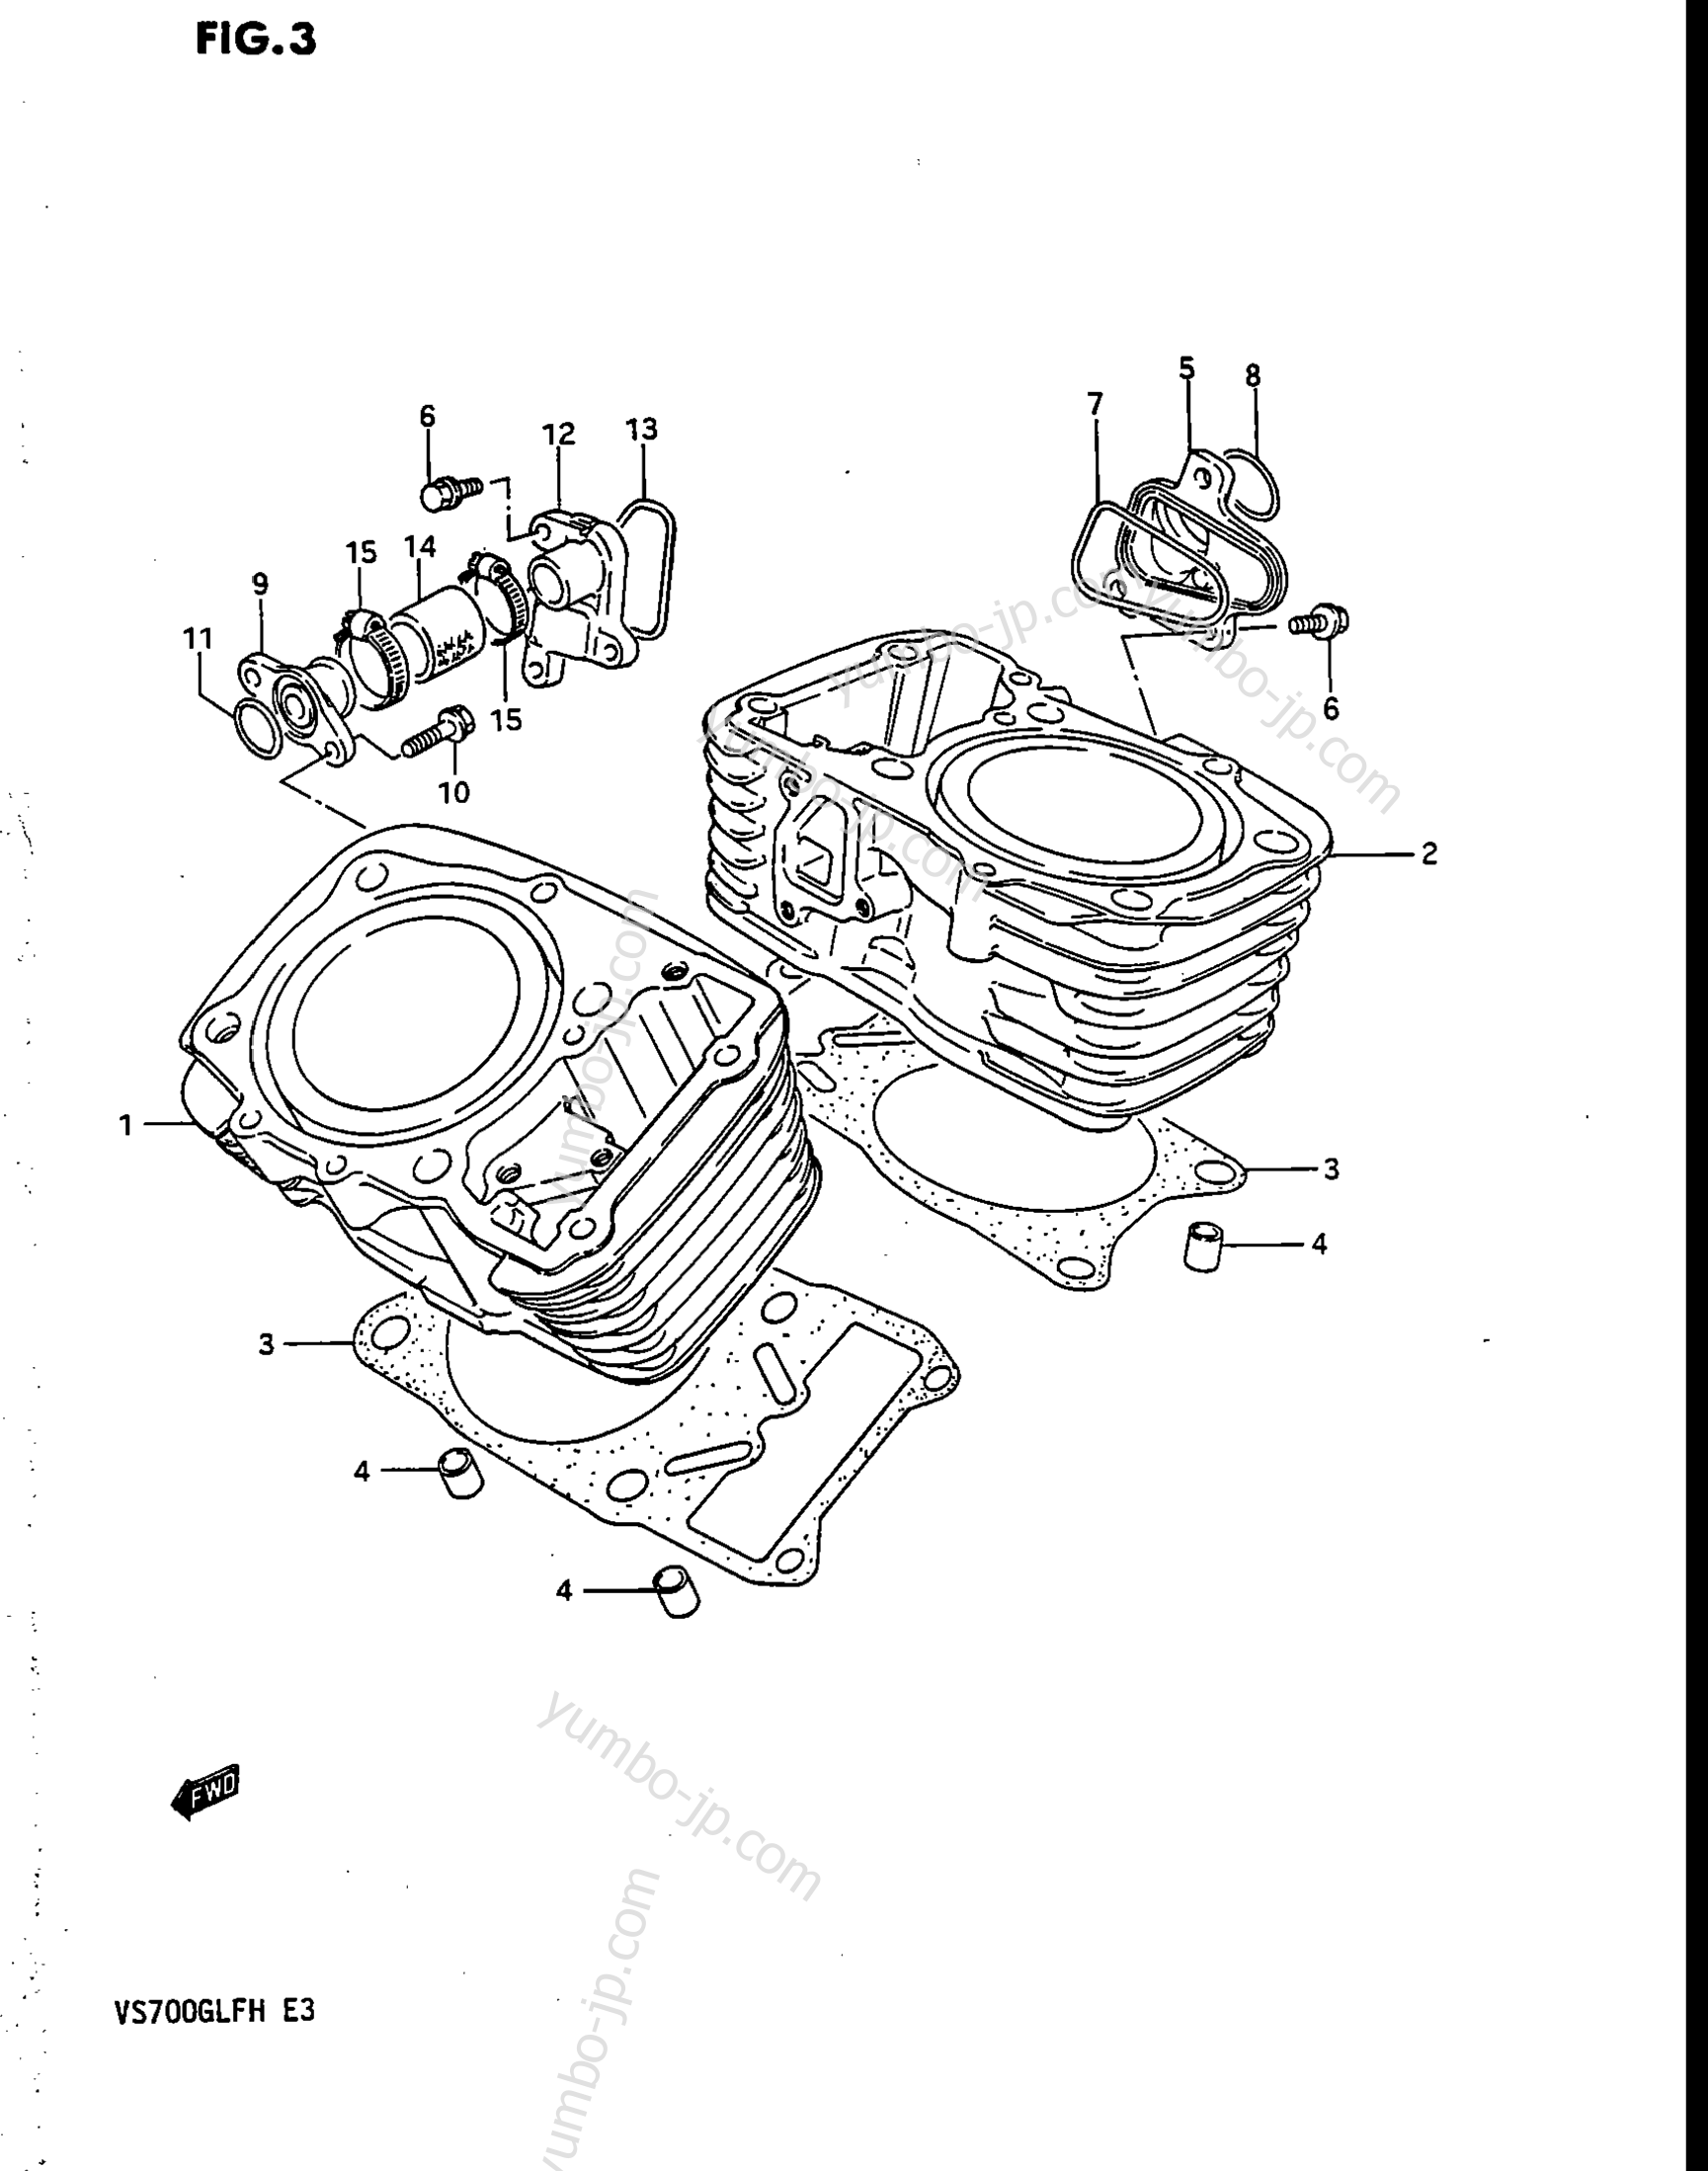 CYLINDER for motorcycles SUZUKI Intruder (VS700GLF) 1986 year